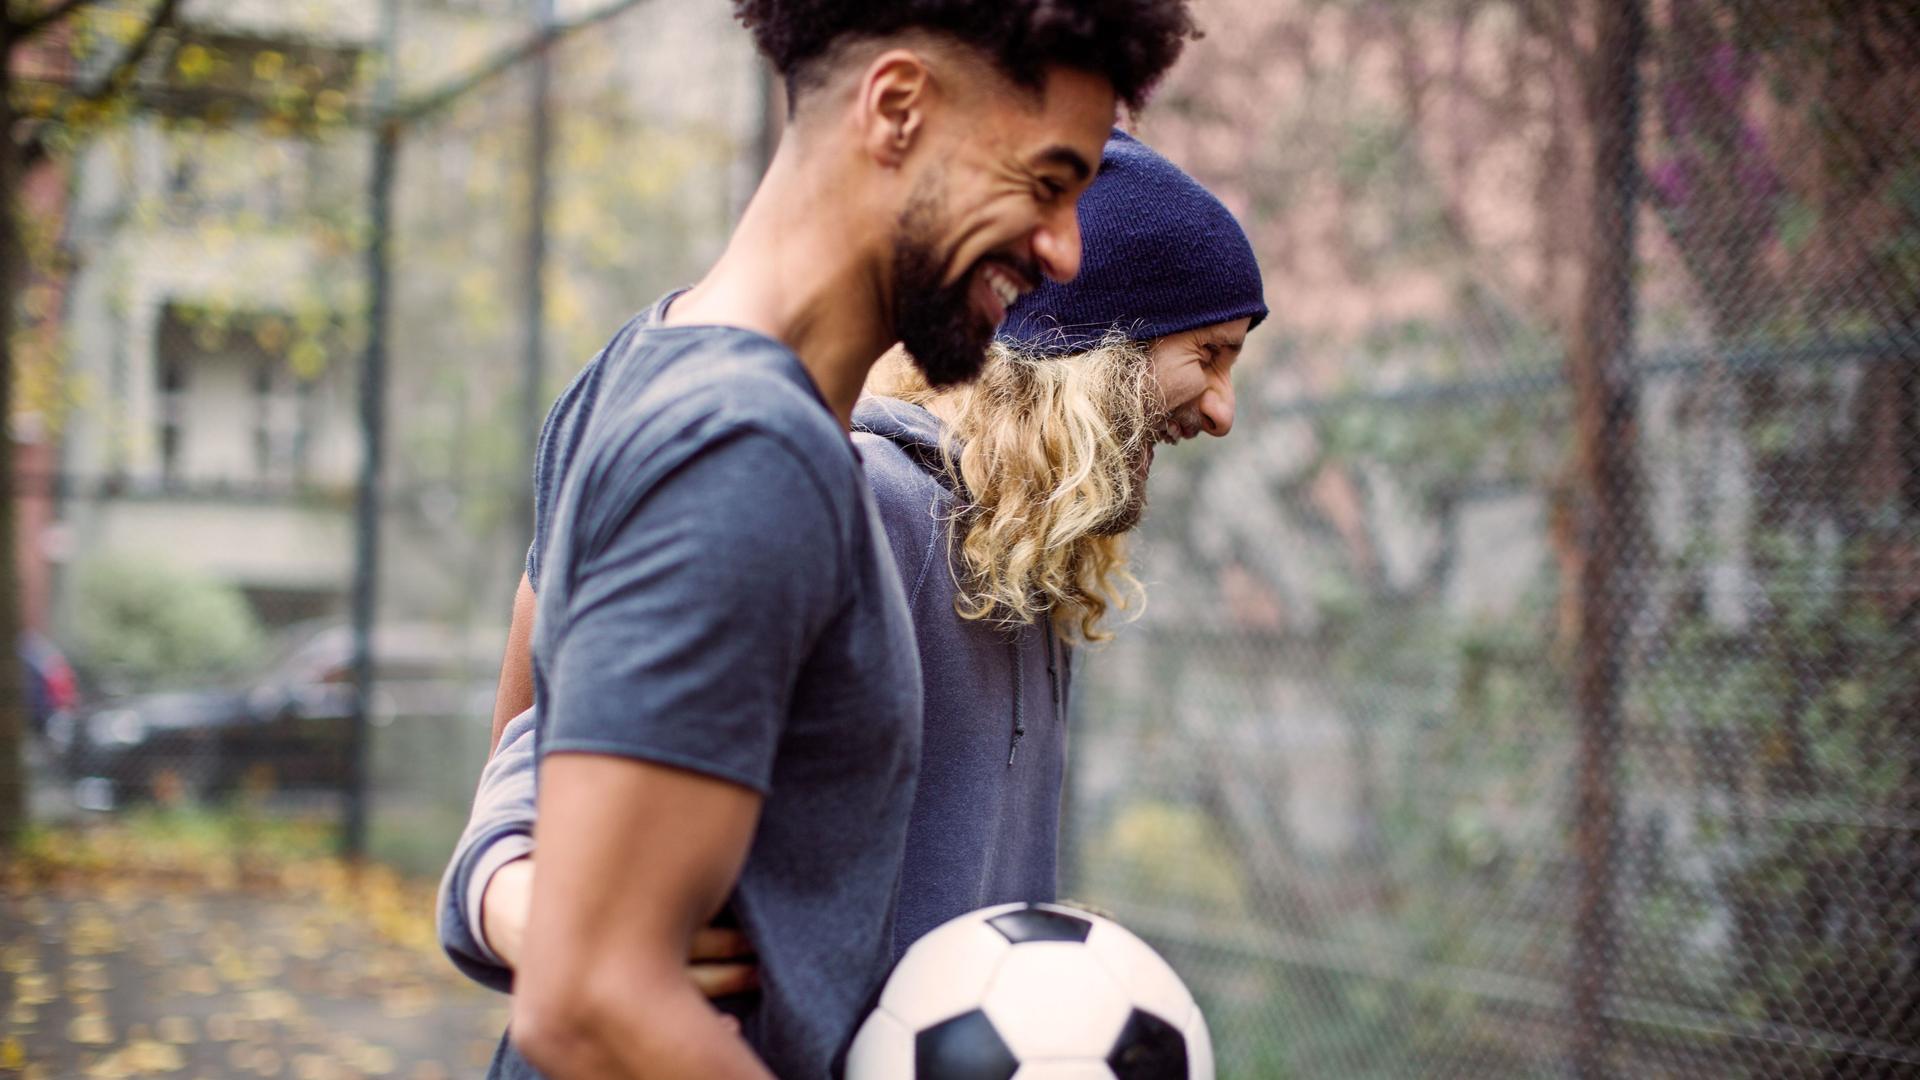 Zwei lachende Fußballspieler mit Ball im Gespräch auf einem asphaltierten Fußballplatz. Sie umarmen sich und lachen ausgelassen.